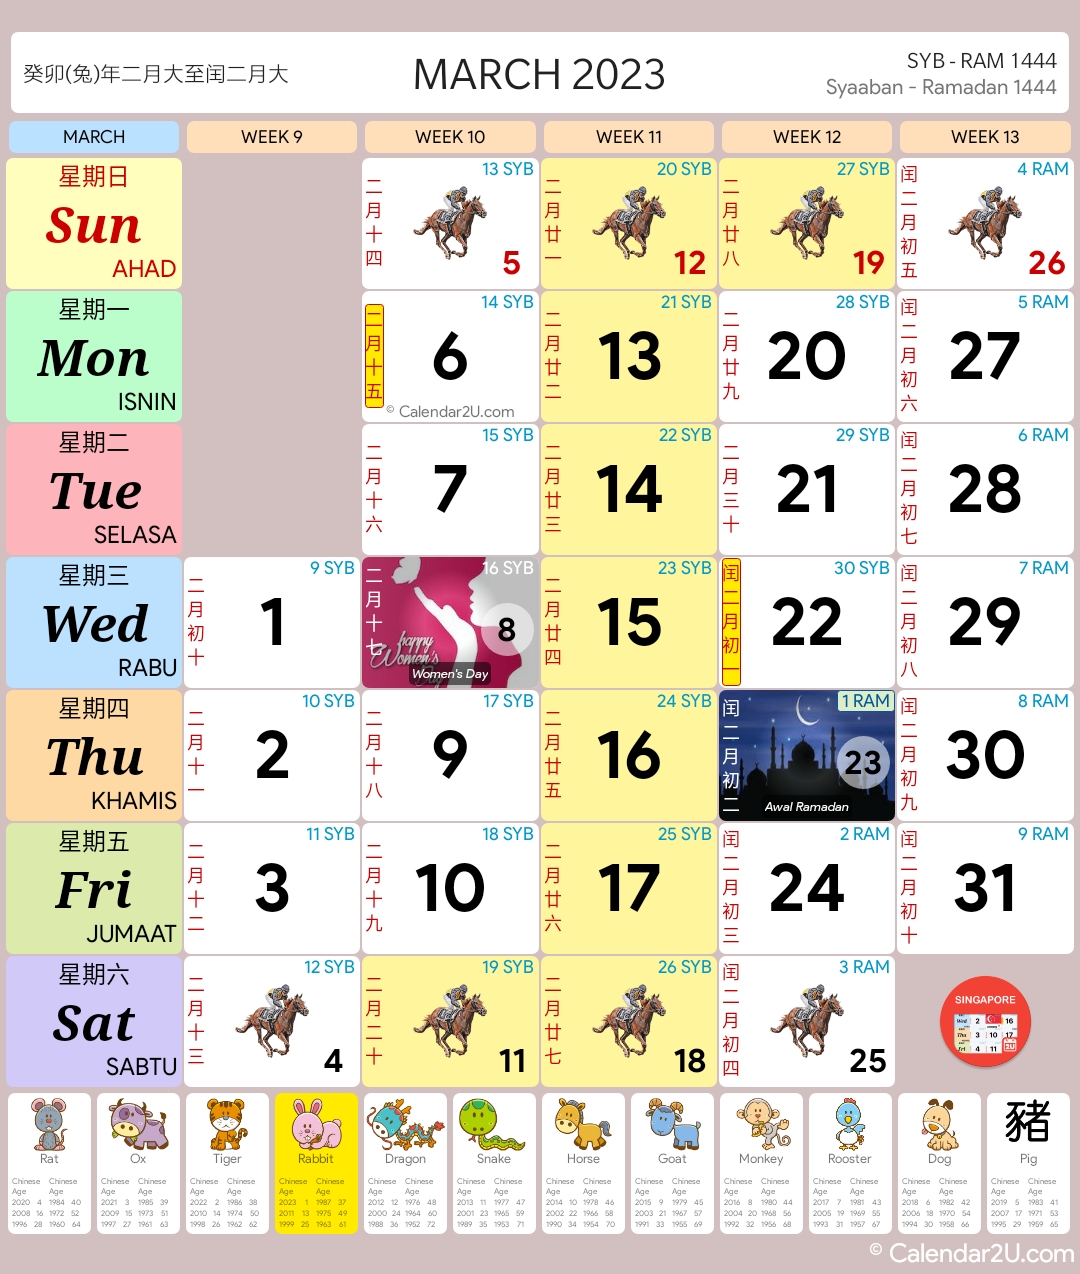 Singapore Calendar Year 2023 - Singapore Calendar